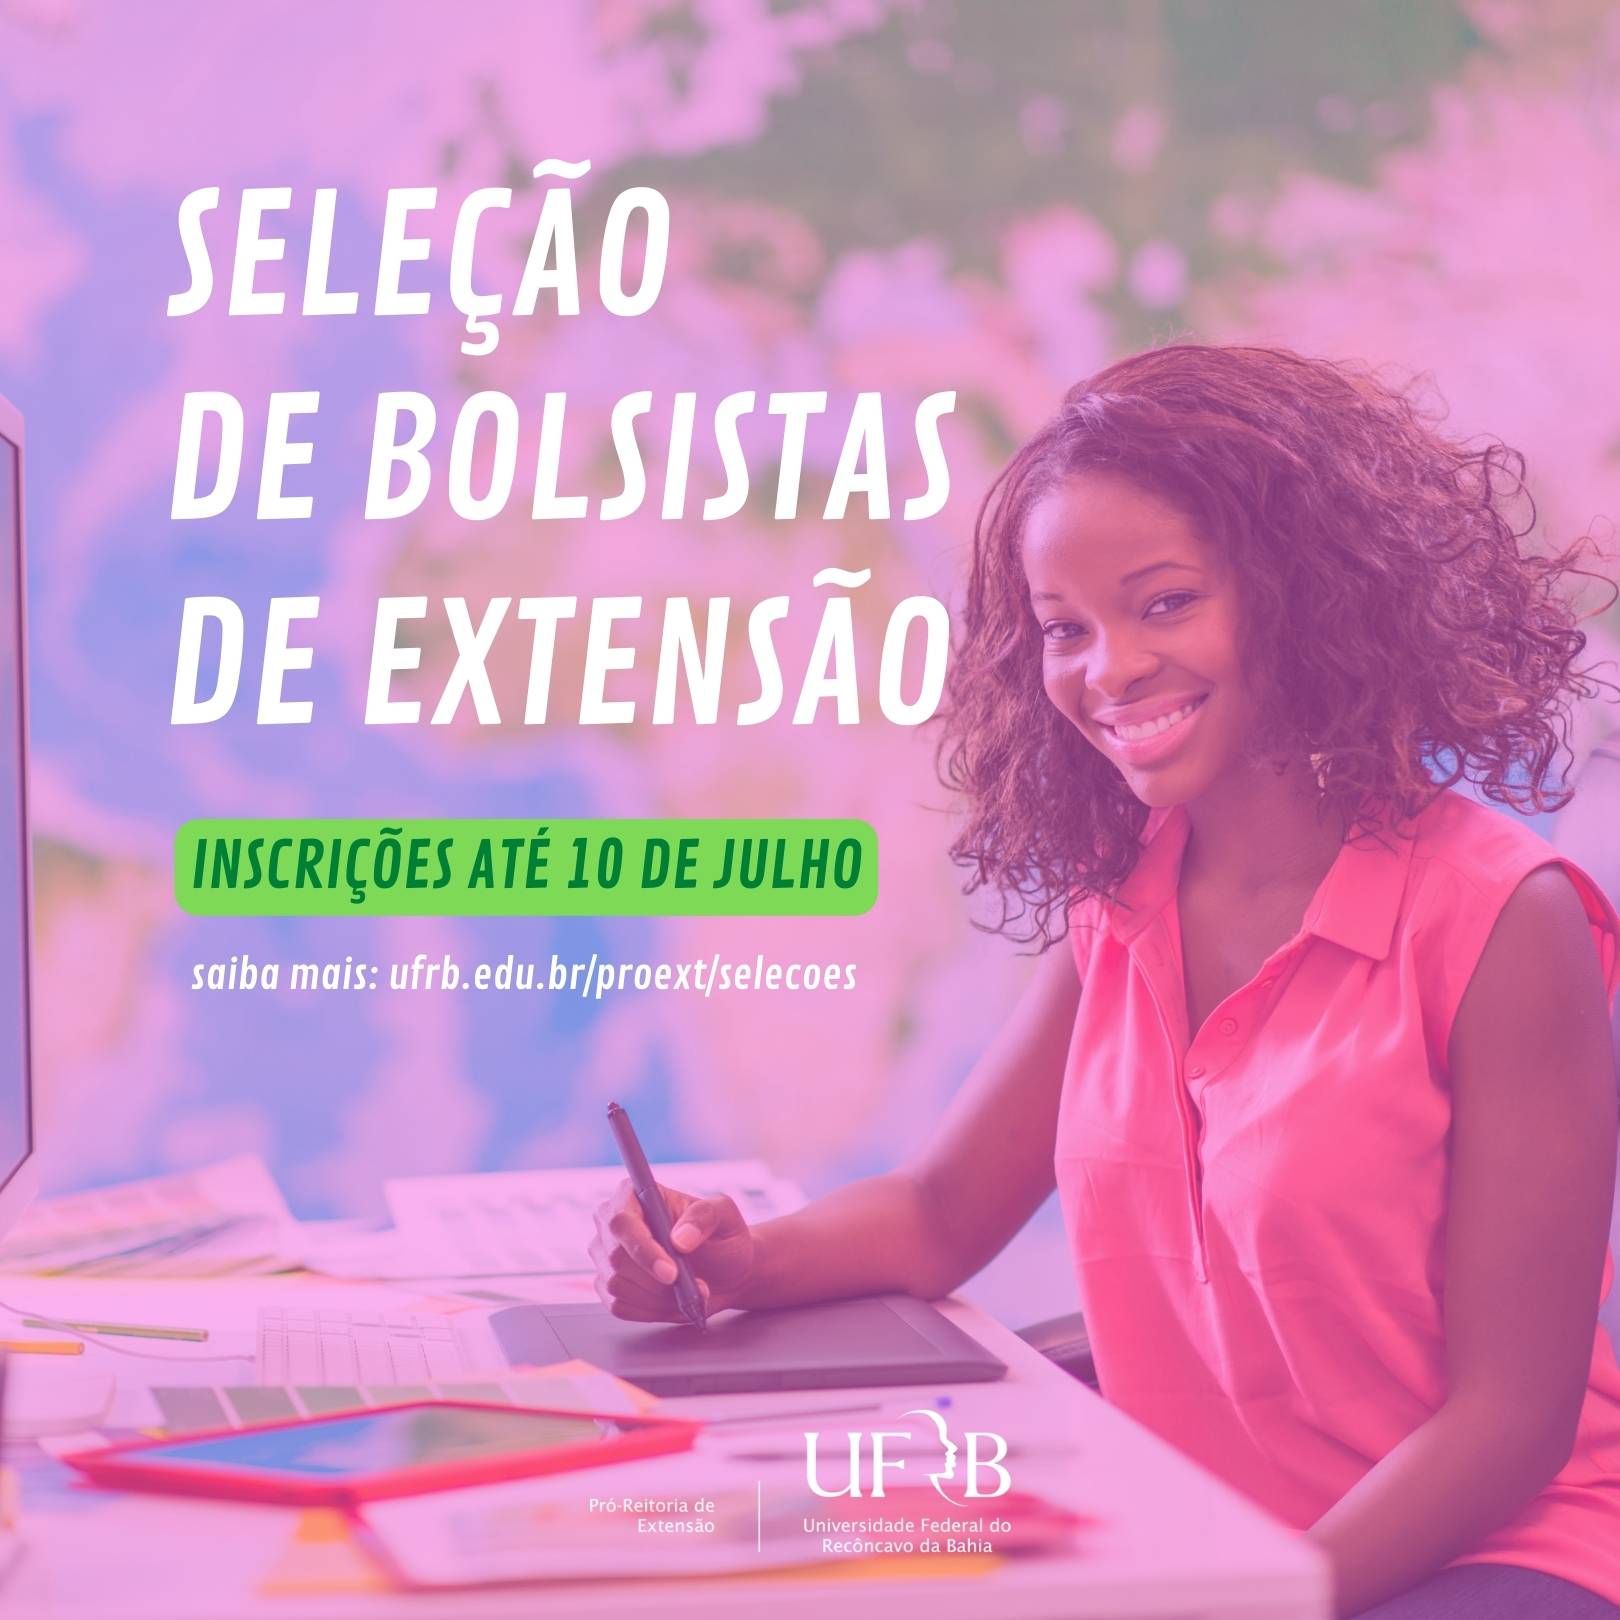 UFRB seleciona bolsistas de extensão para apoio a ações da Proext